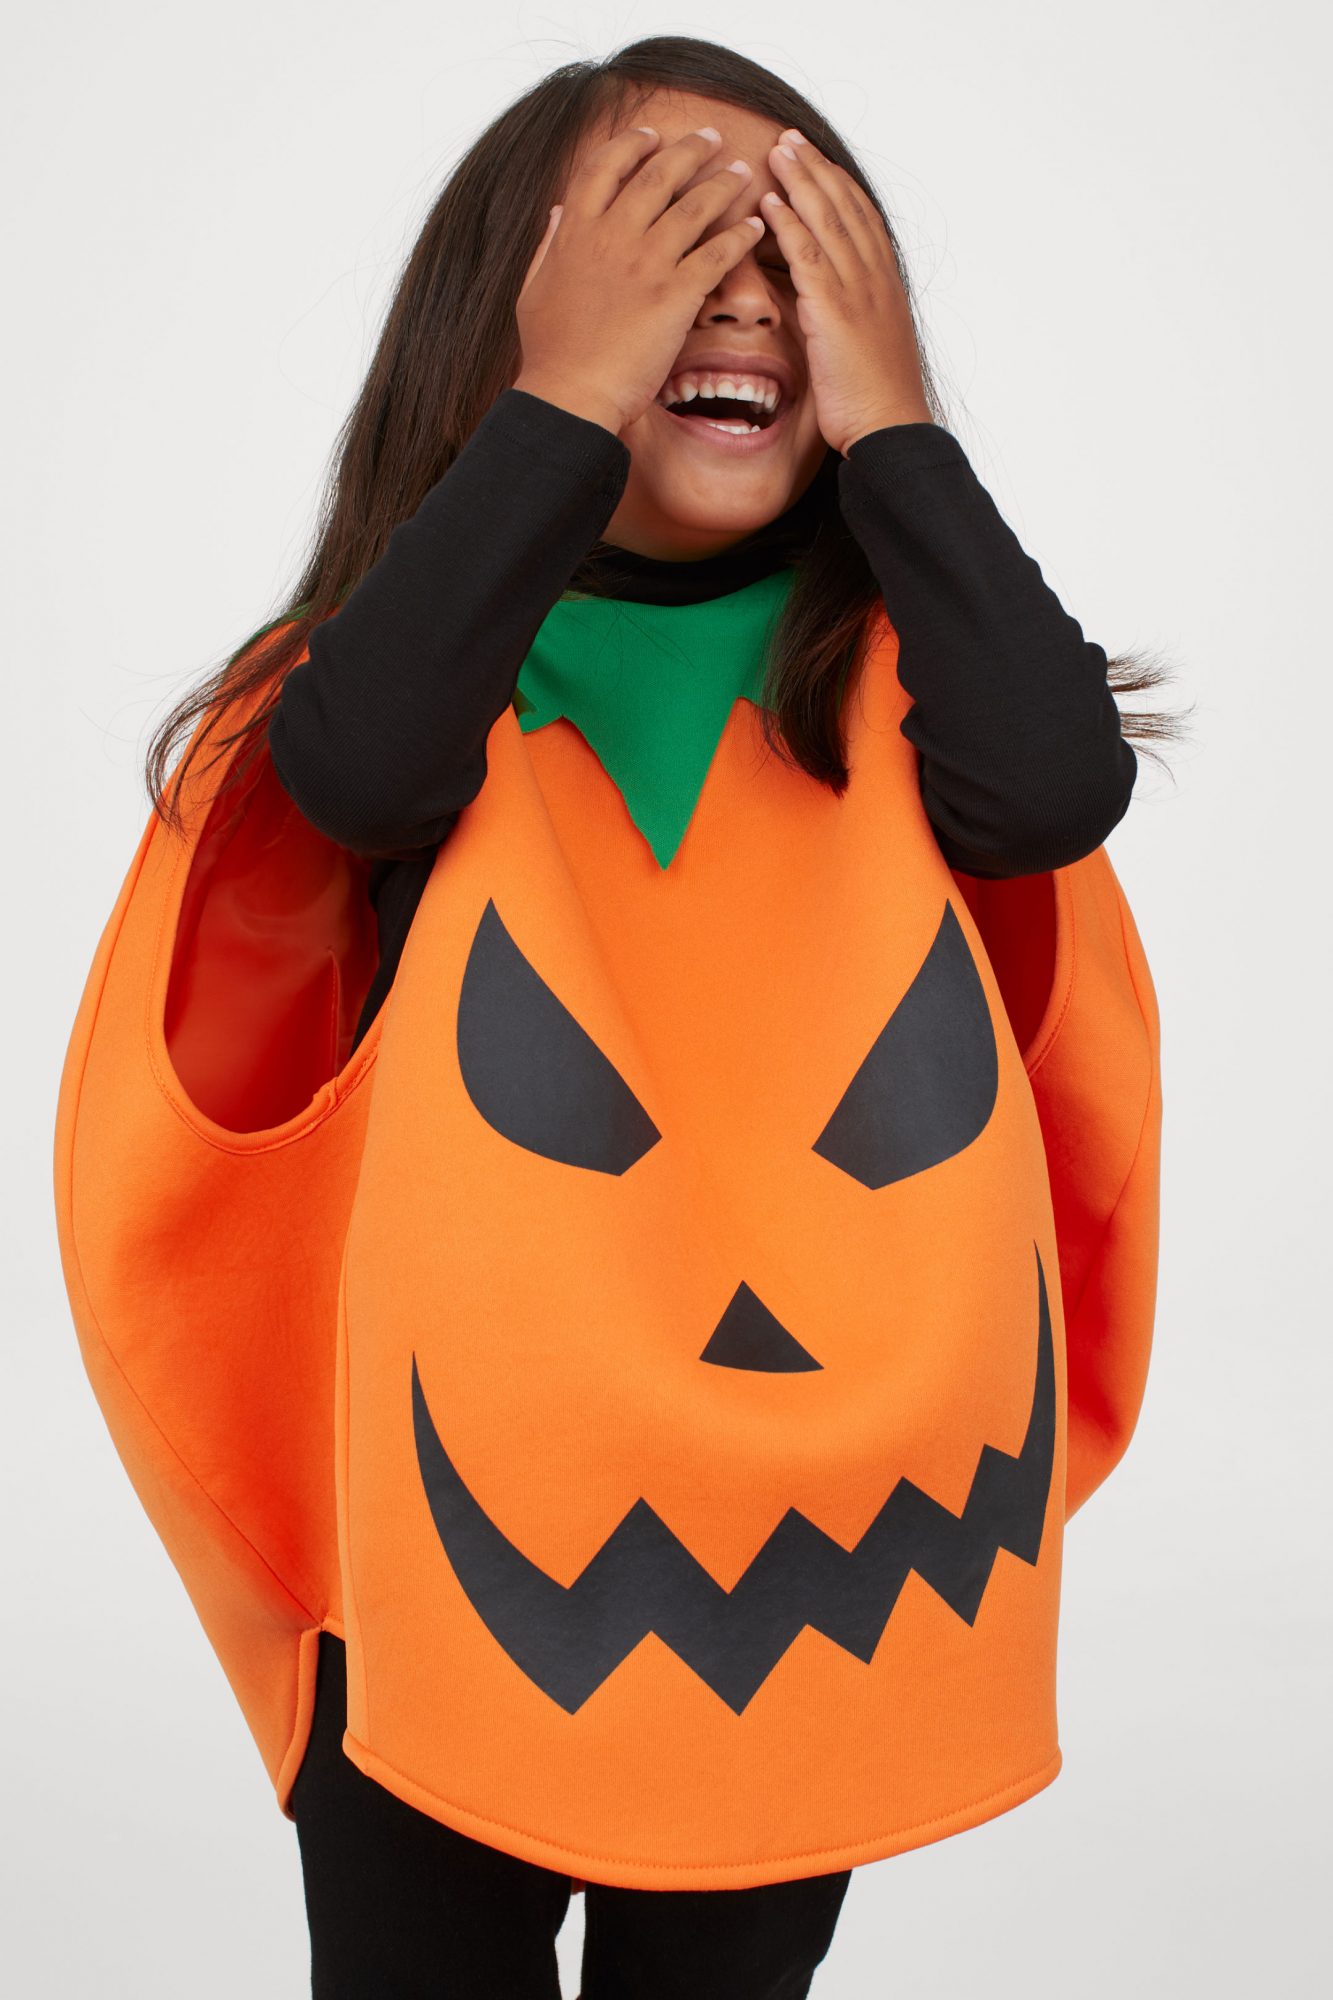 pumpkin halloween costume for kids